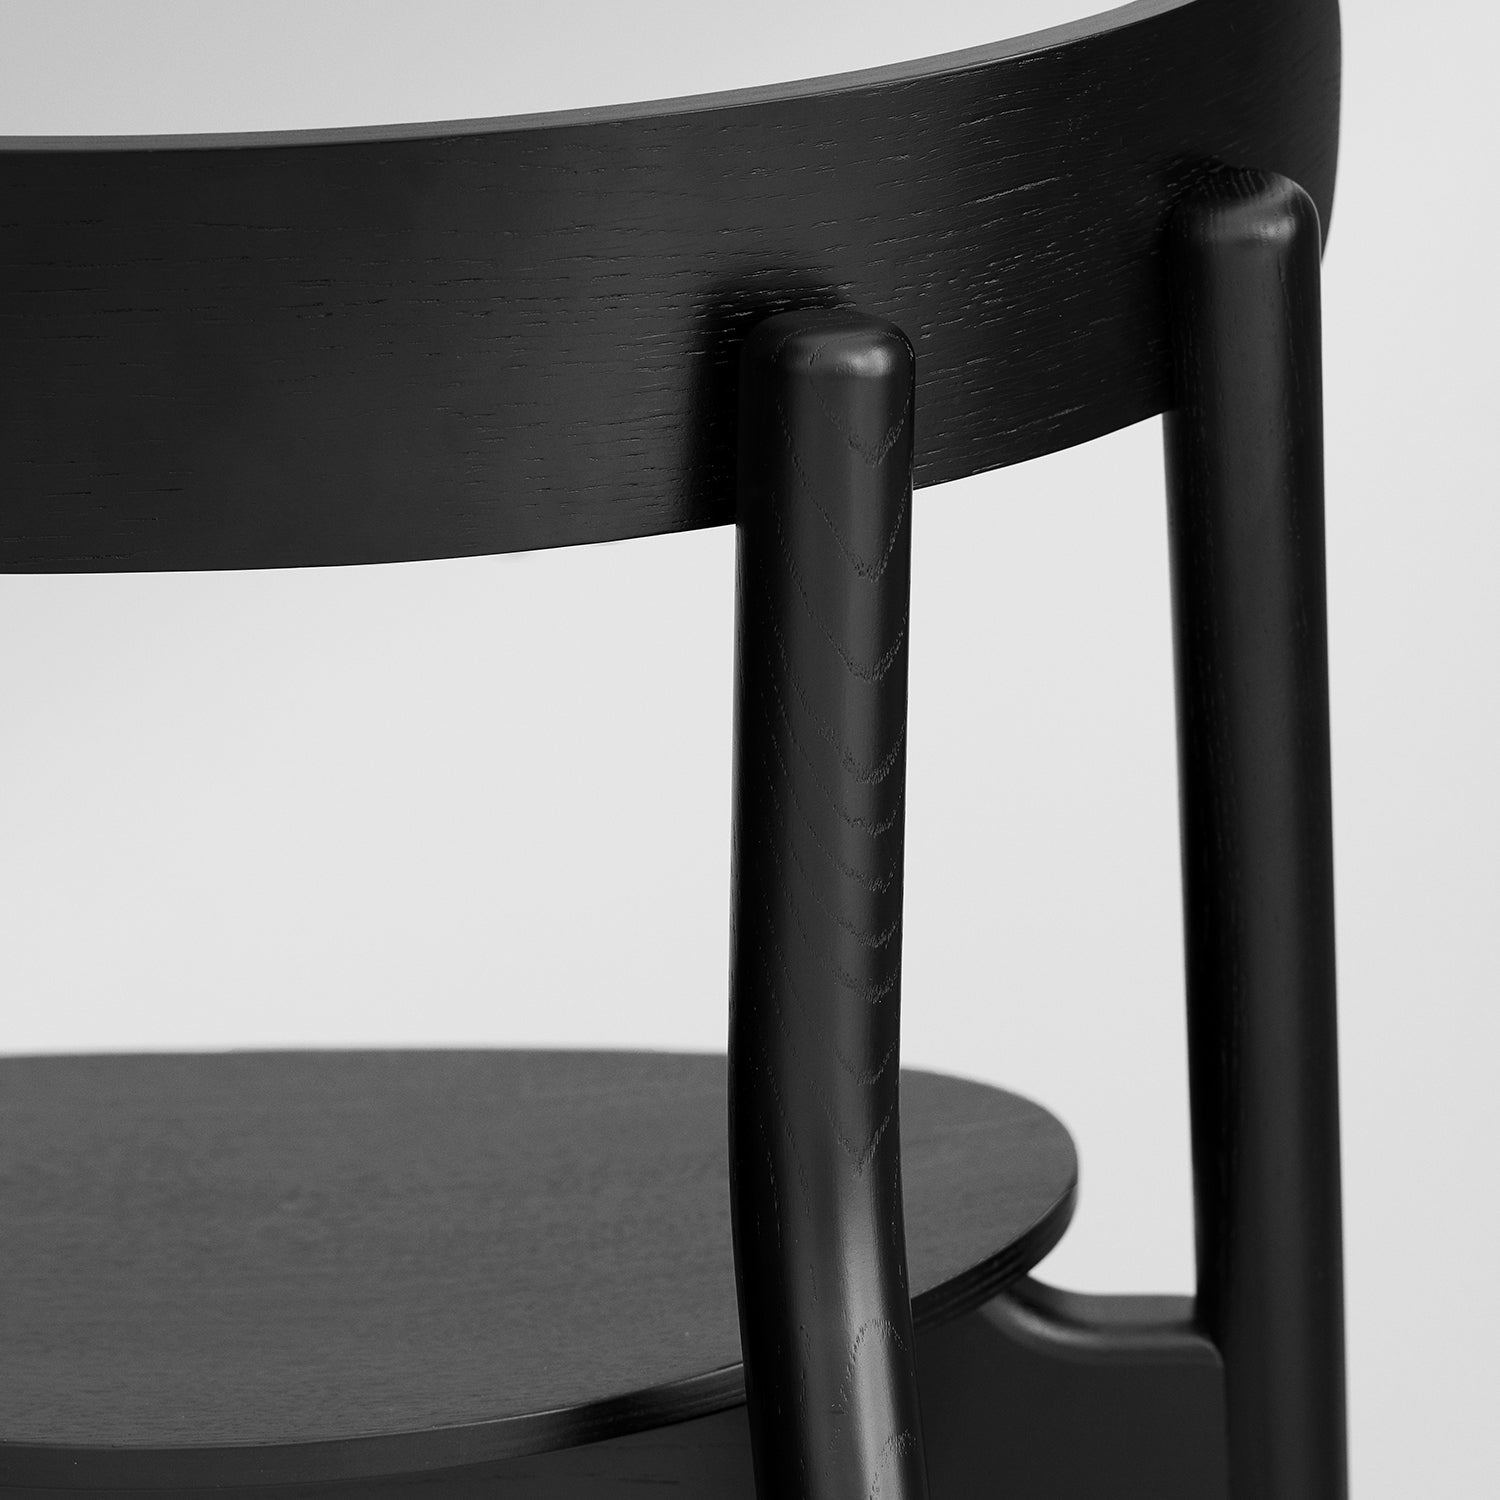 Oaki Dining Chair - The Design Choice